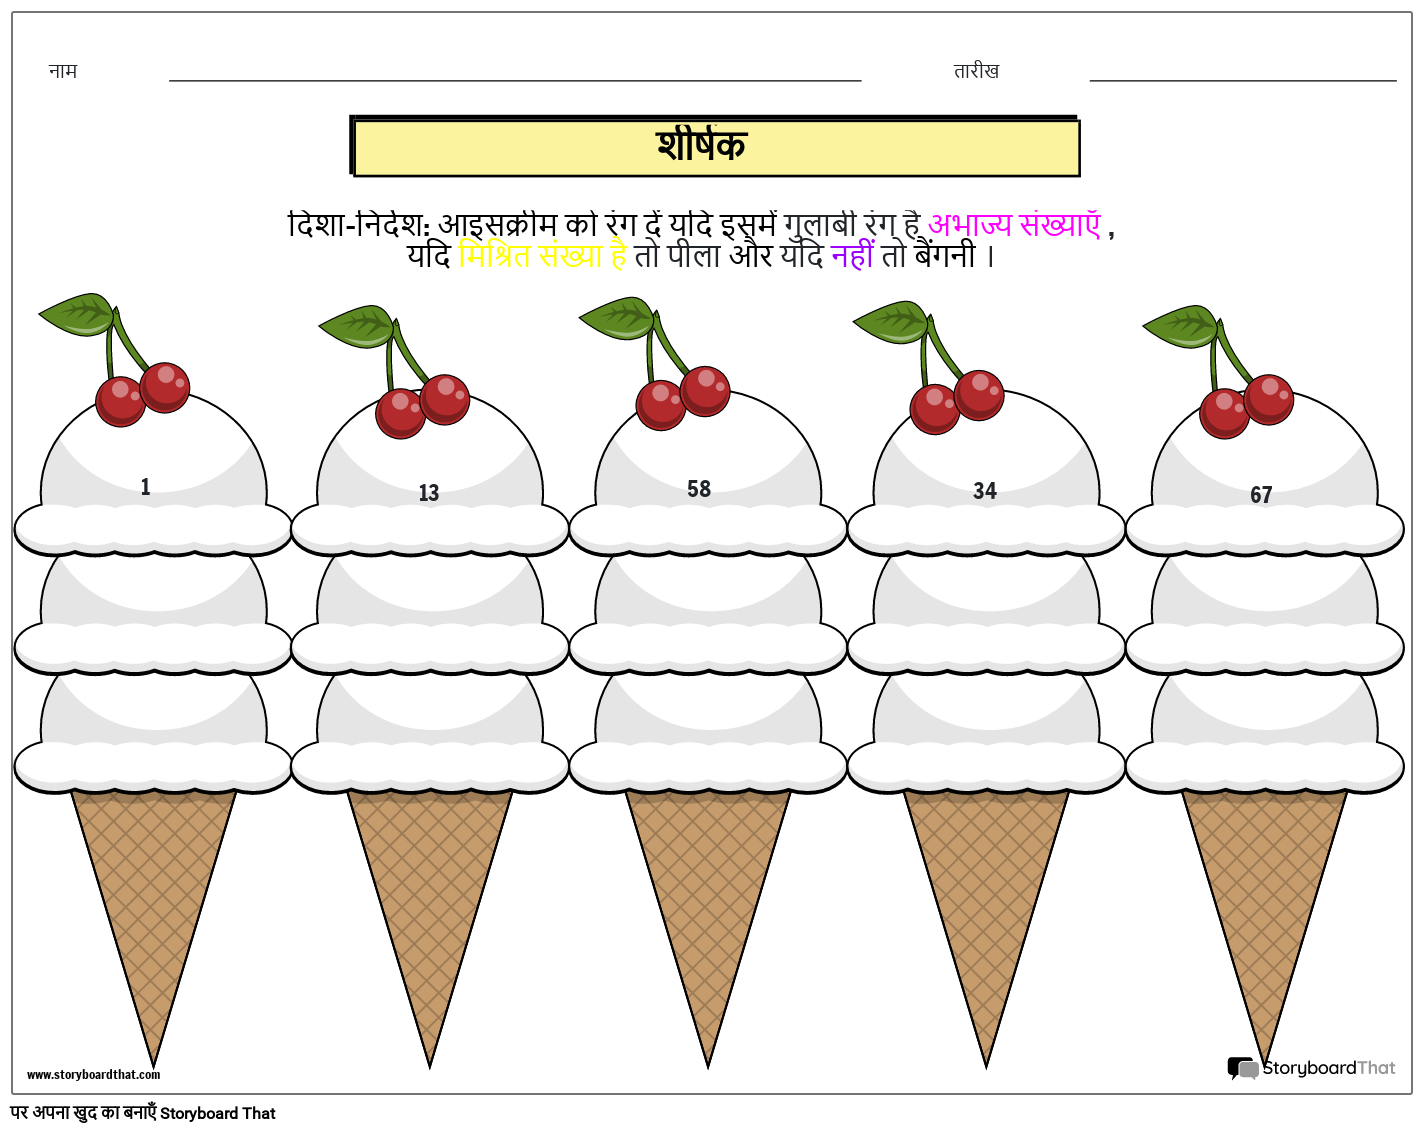 आइसक्रीम-थीम वाली प्राइम और कम्पोजिट नंबर वर्कशीट